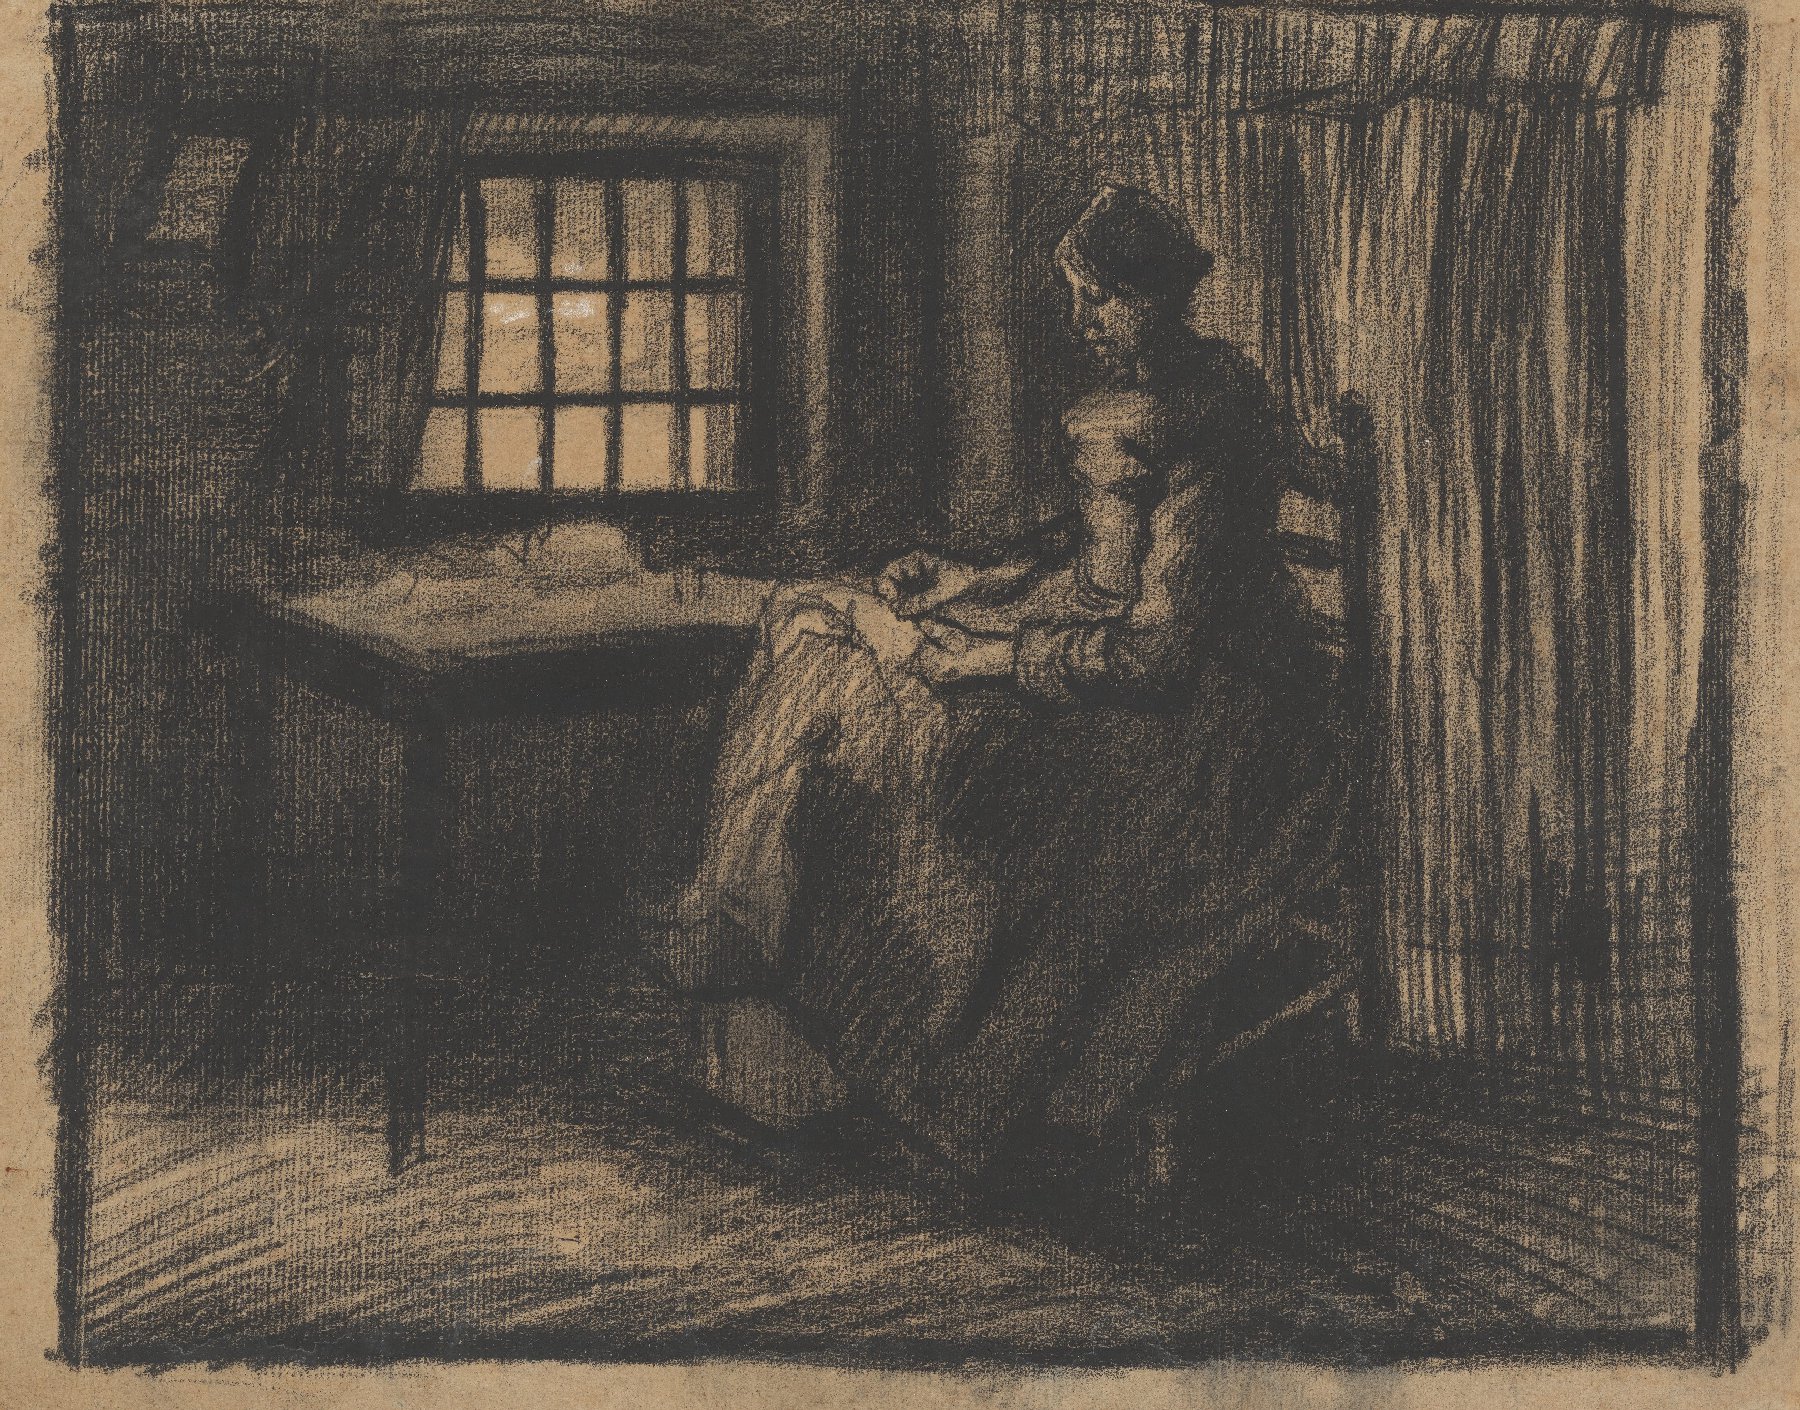 Naaiende vrouw Vincent van Gogh (1853 - 1890), Nuenen, maart-april 1885